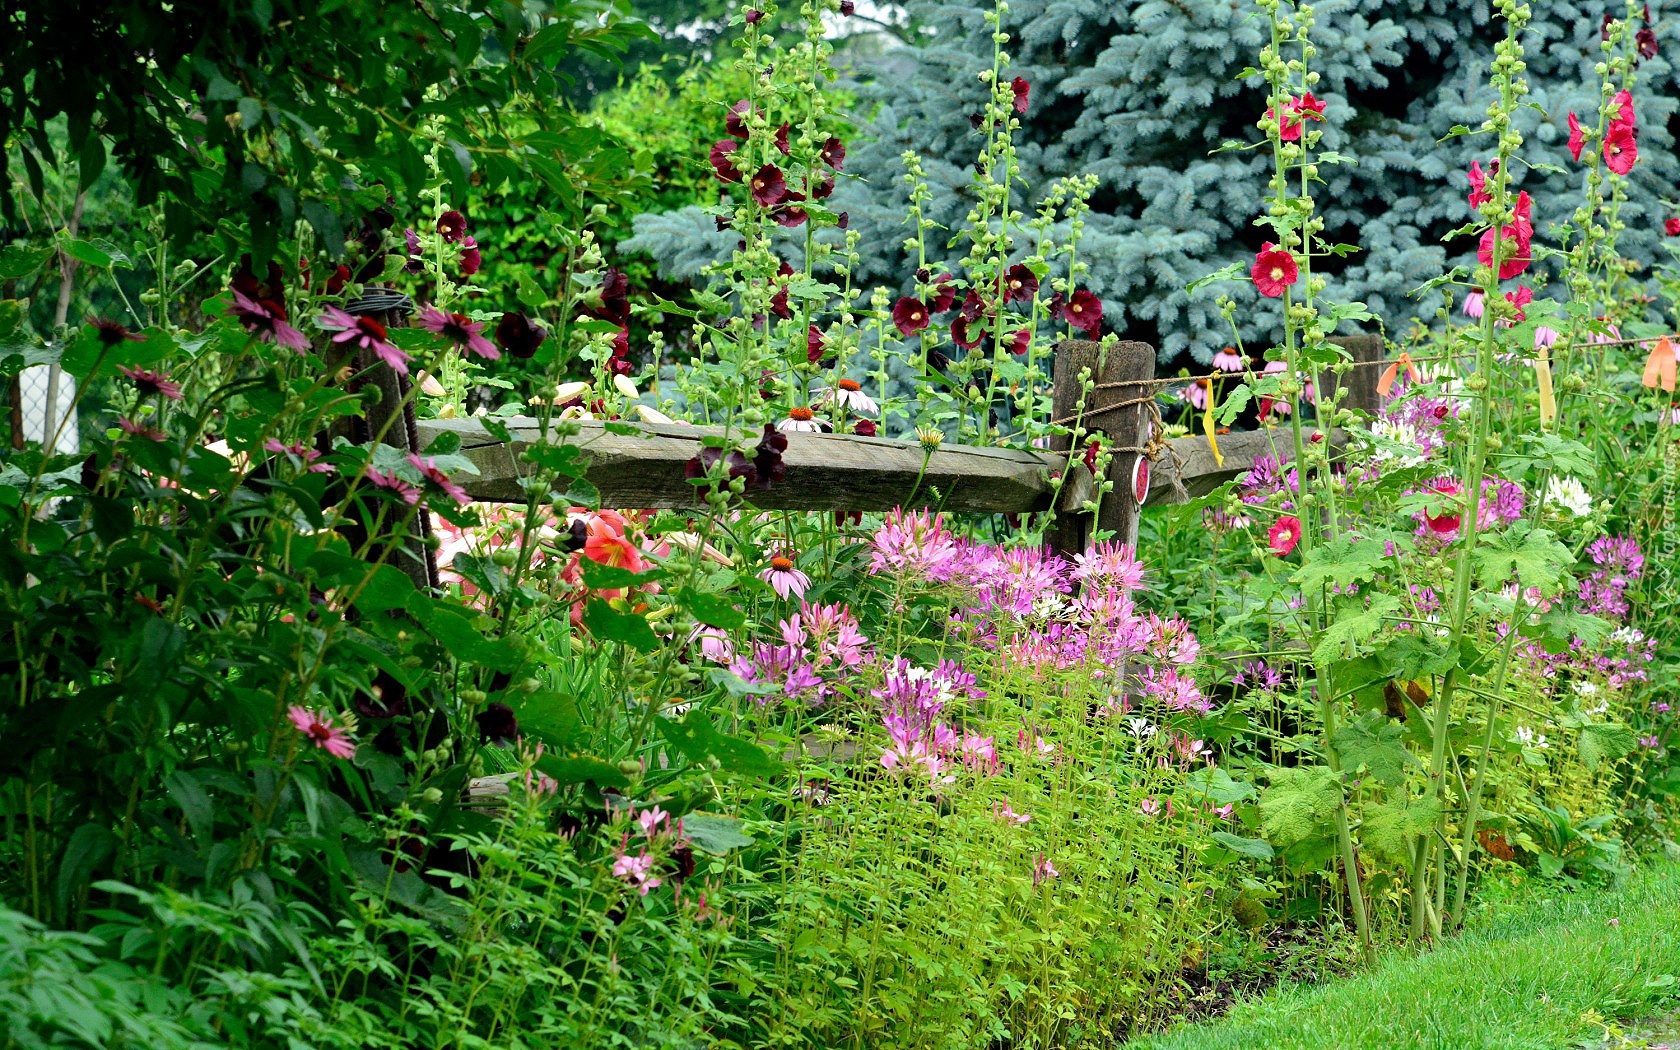 Ogródek, Kwiaty, Malwy